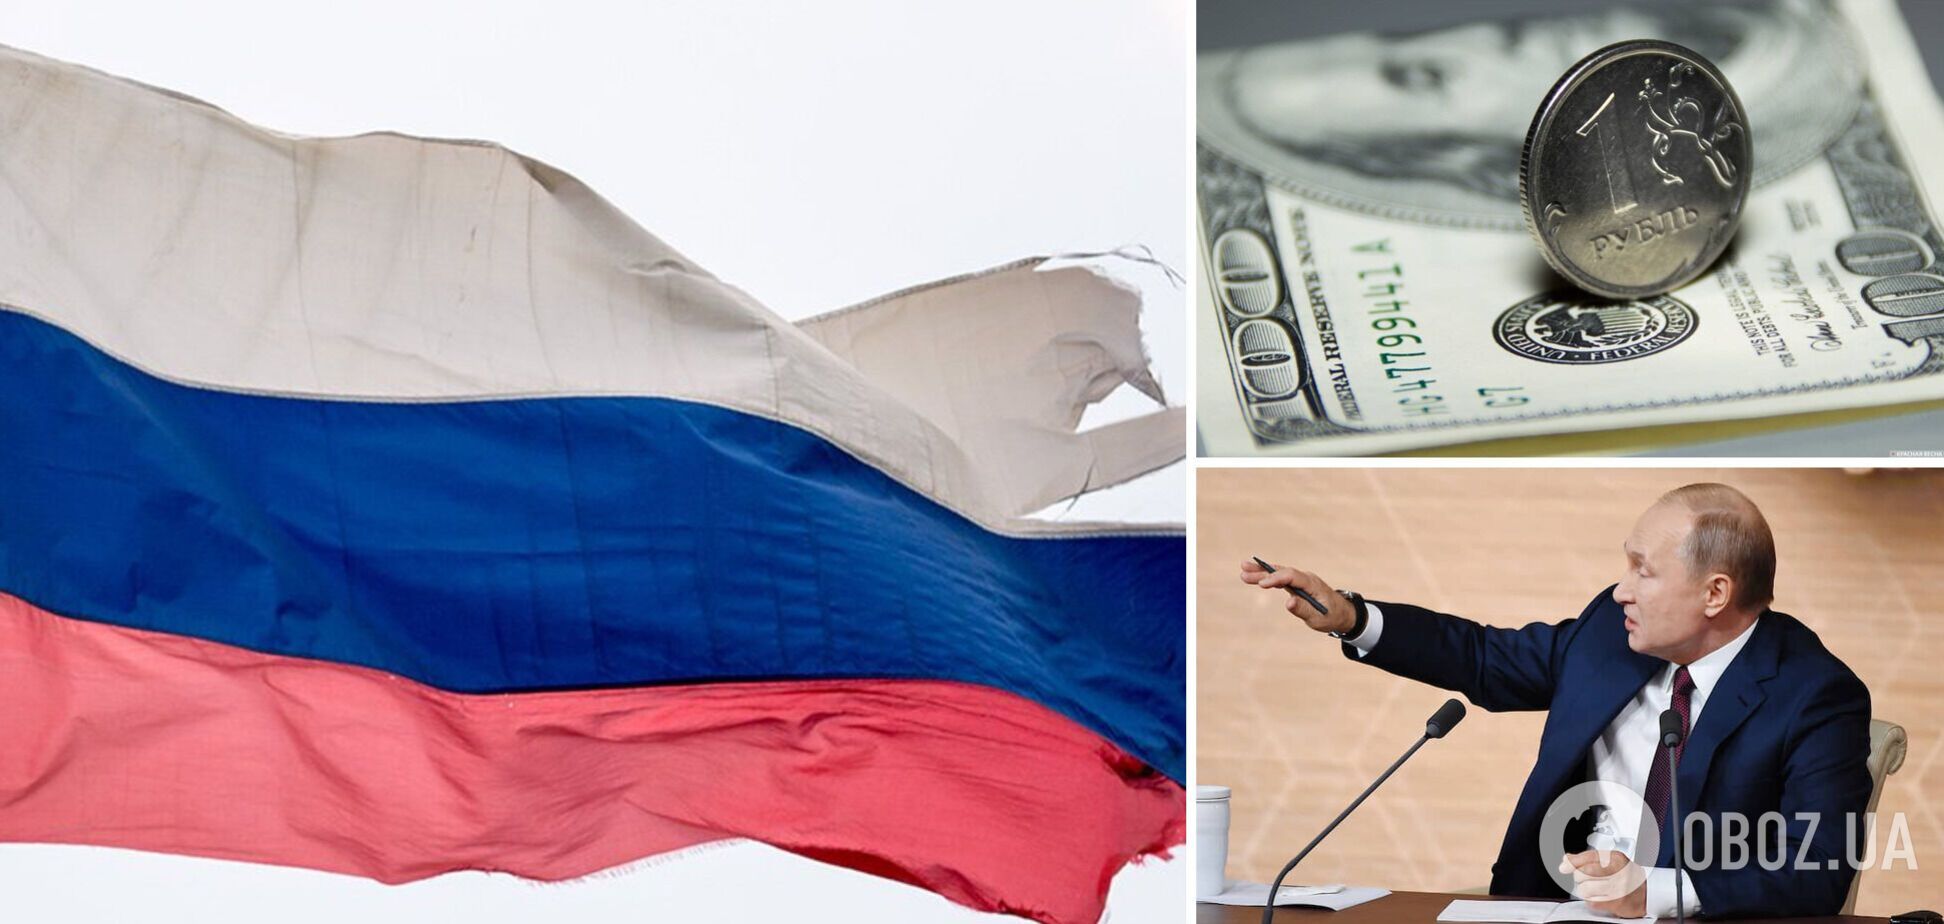 Найман заявил, что дефолт РФ приближается